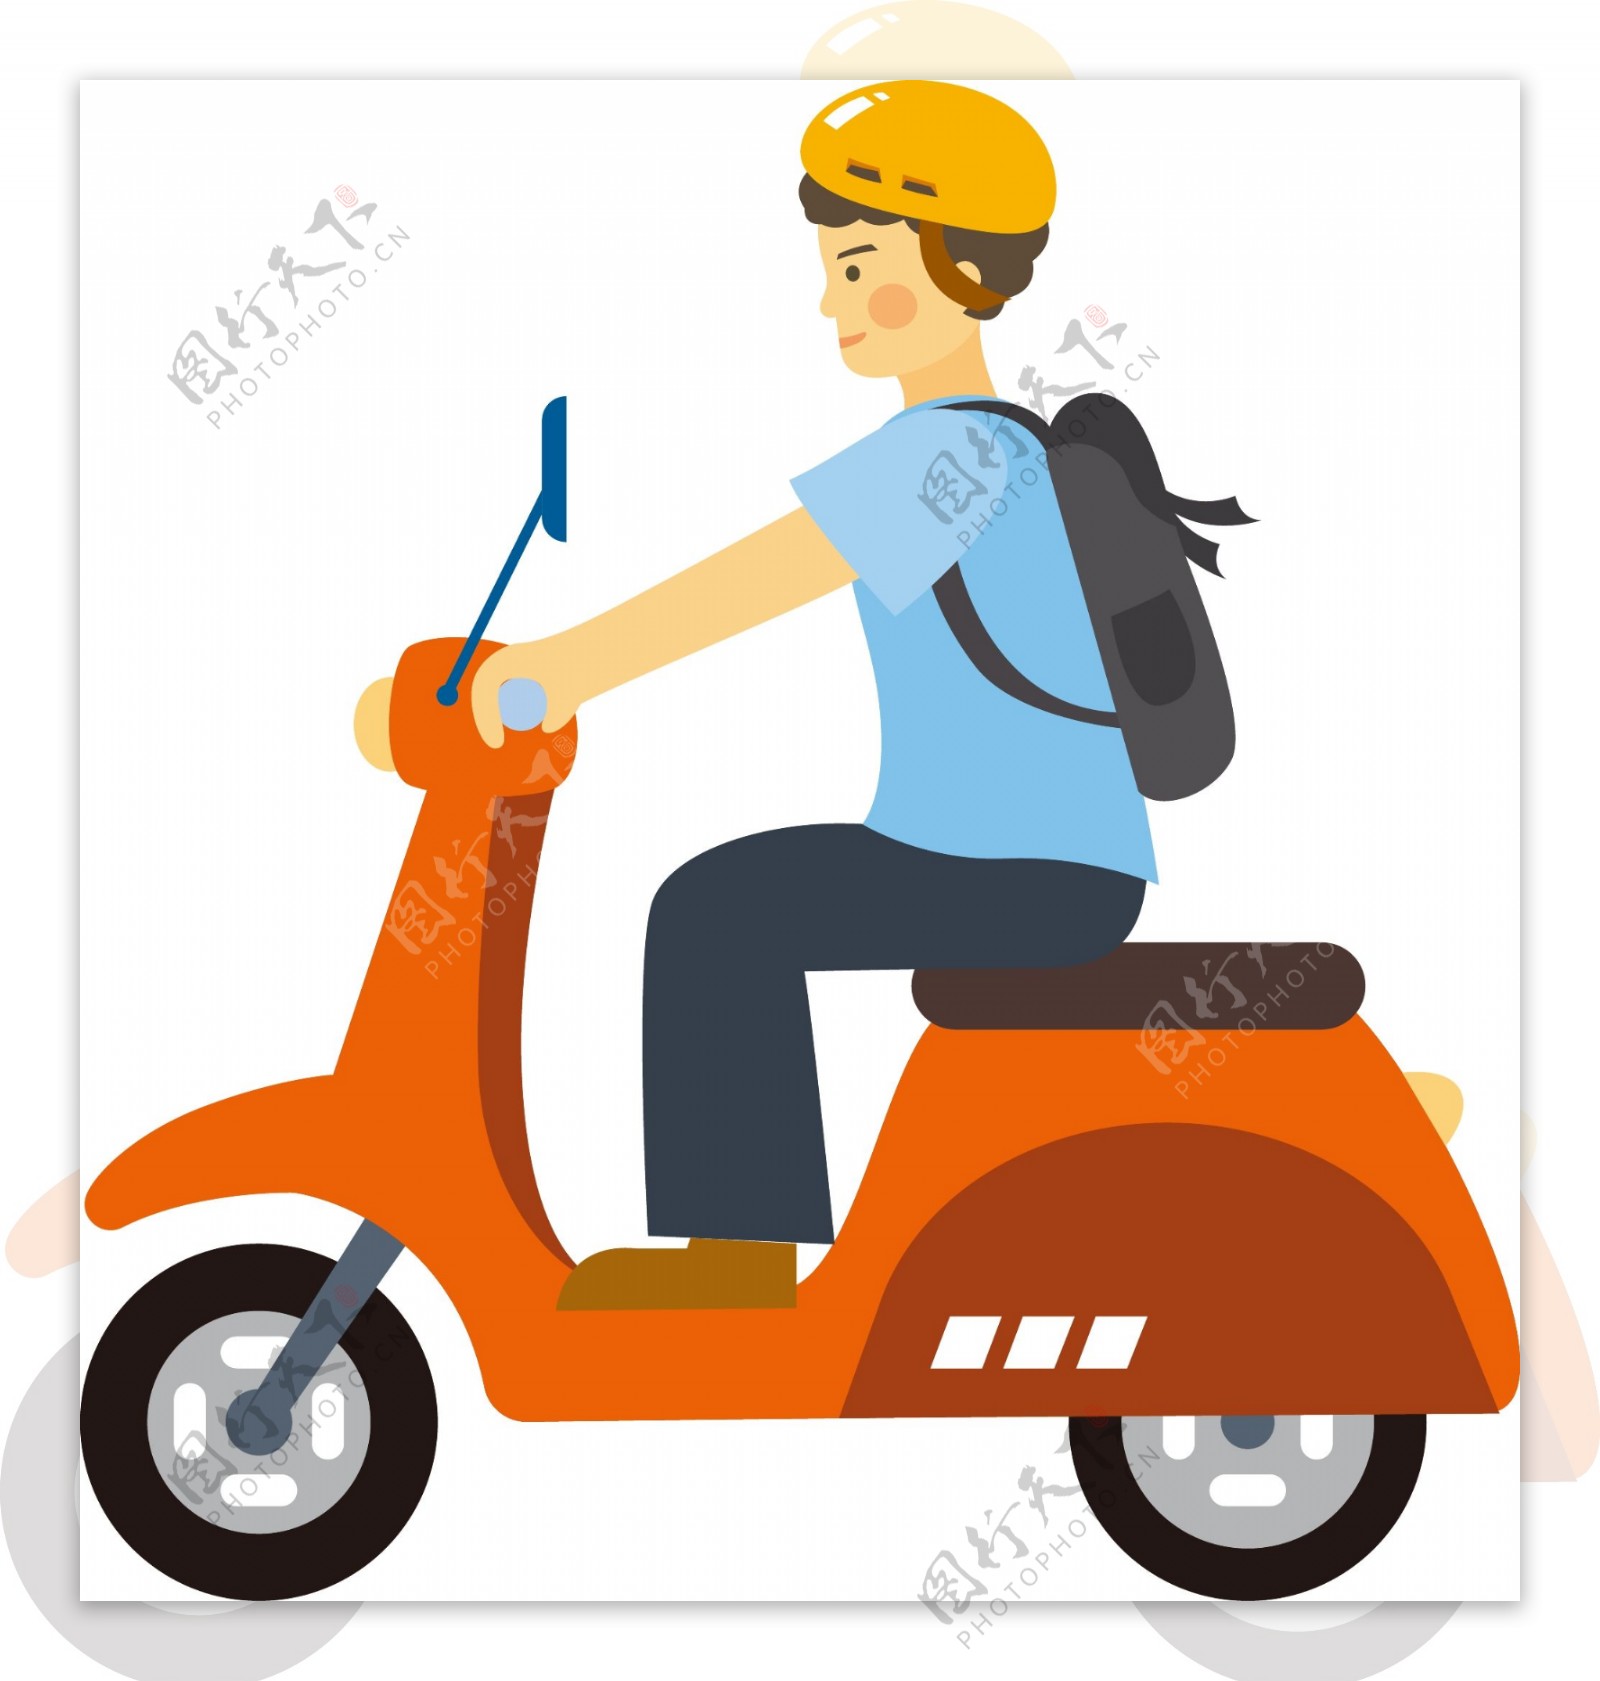 原创骑摩托的小男孩插画素材